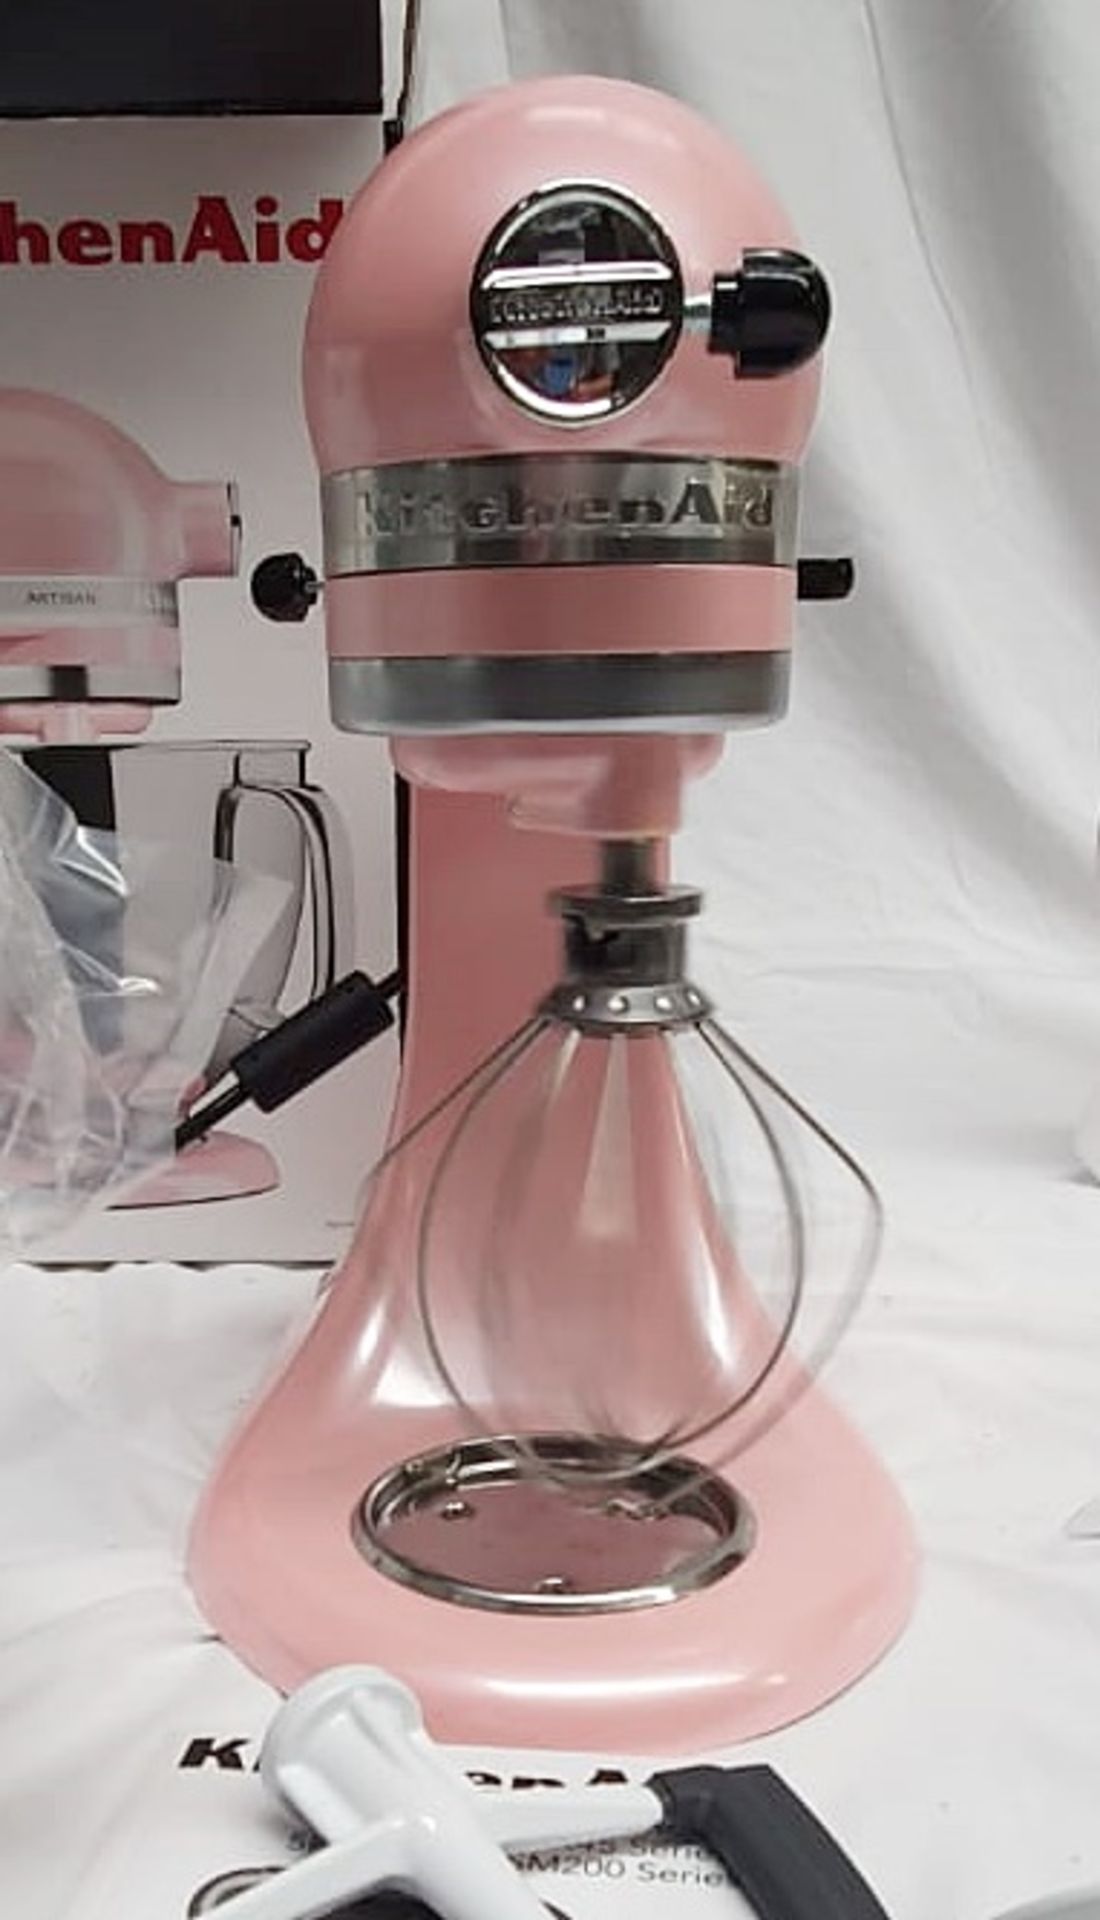 1 x KITCHENAID Artisan Stand Mixer In Pink (4.7L) - Original Price £699.00 - Image 6 of 7